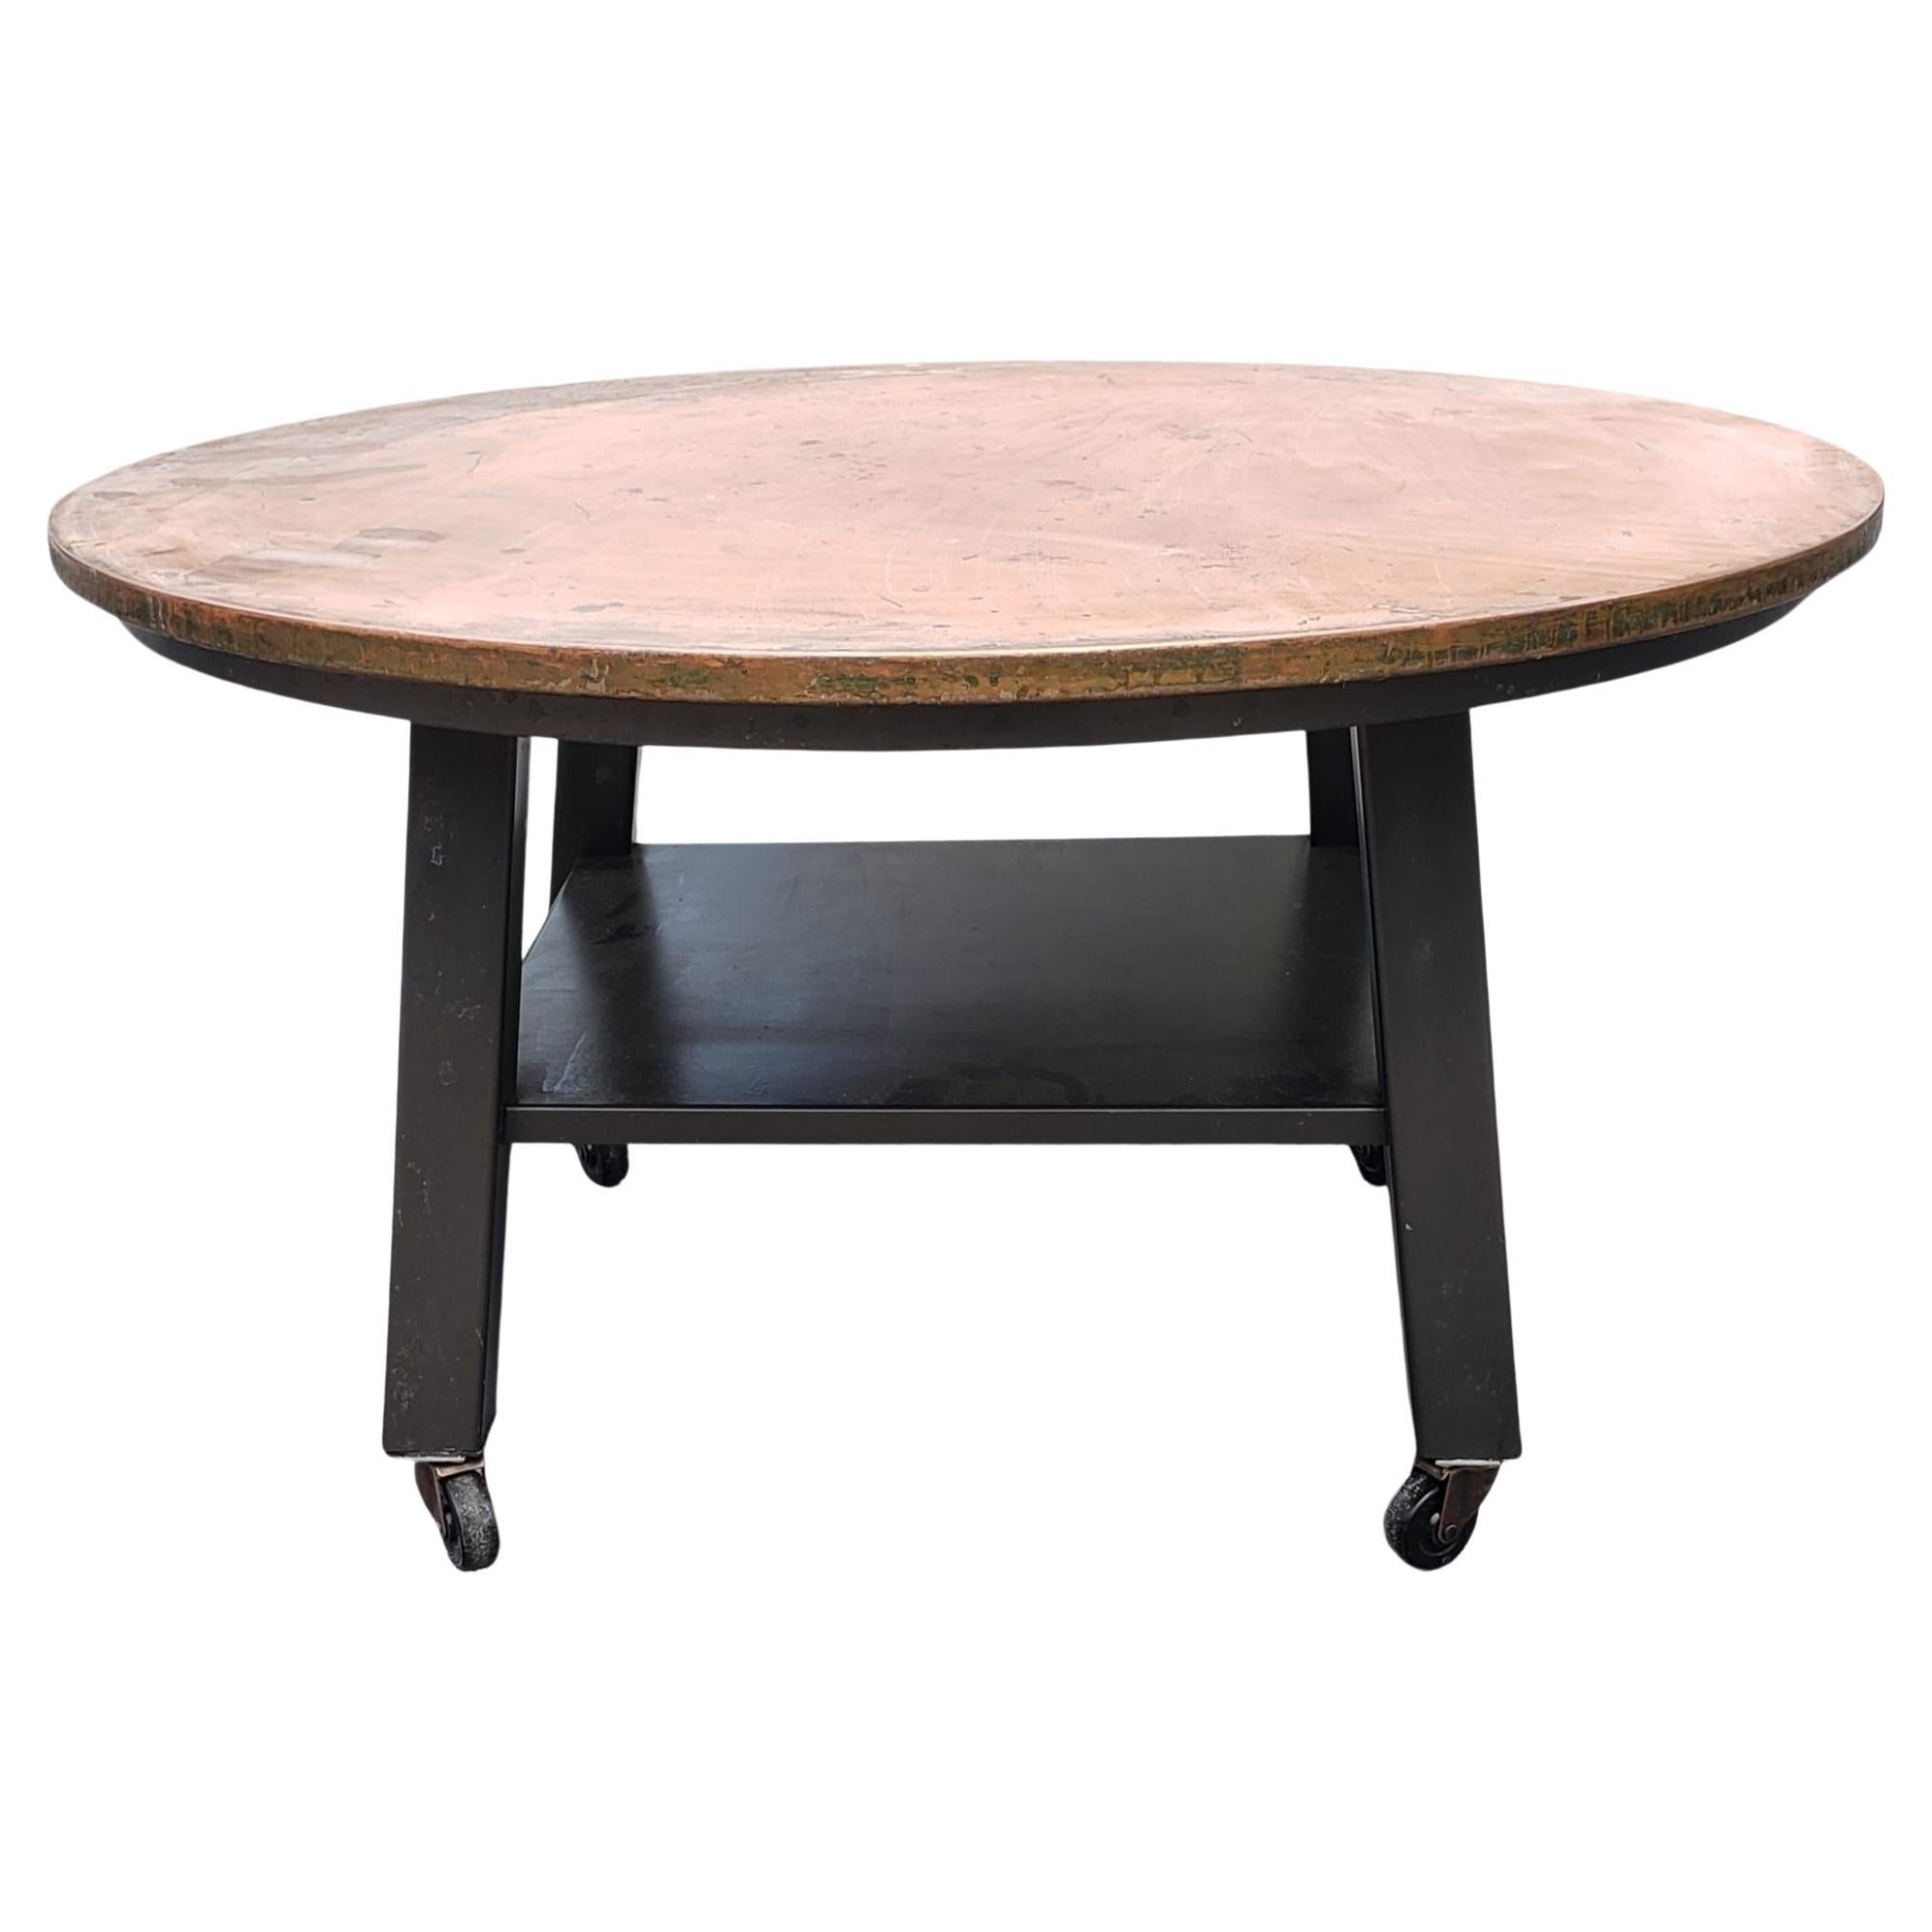 Ethan Allen Two-Tier Copper Top Metal Rolling Outdoor or Indoor Coffee Table